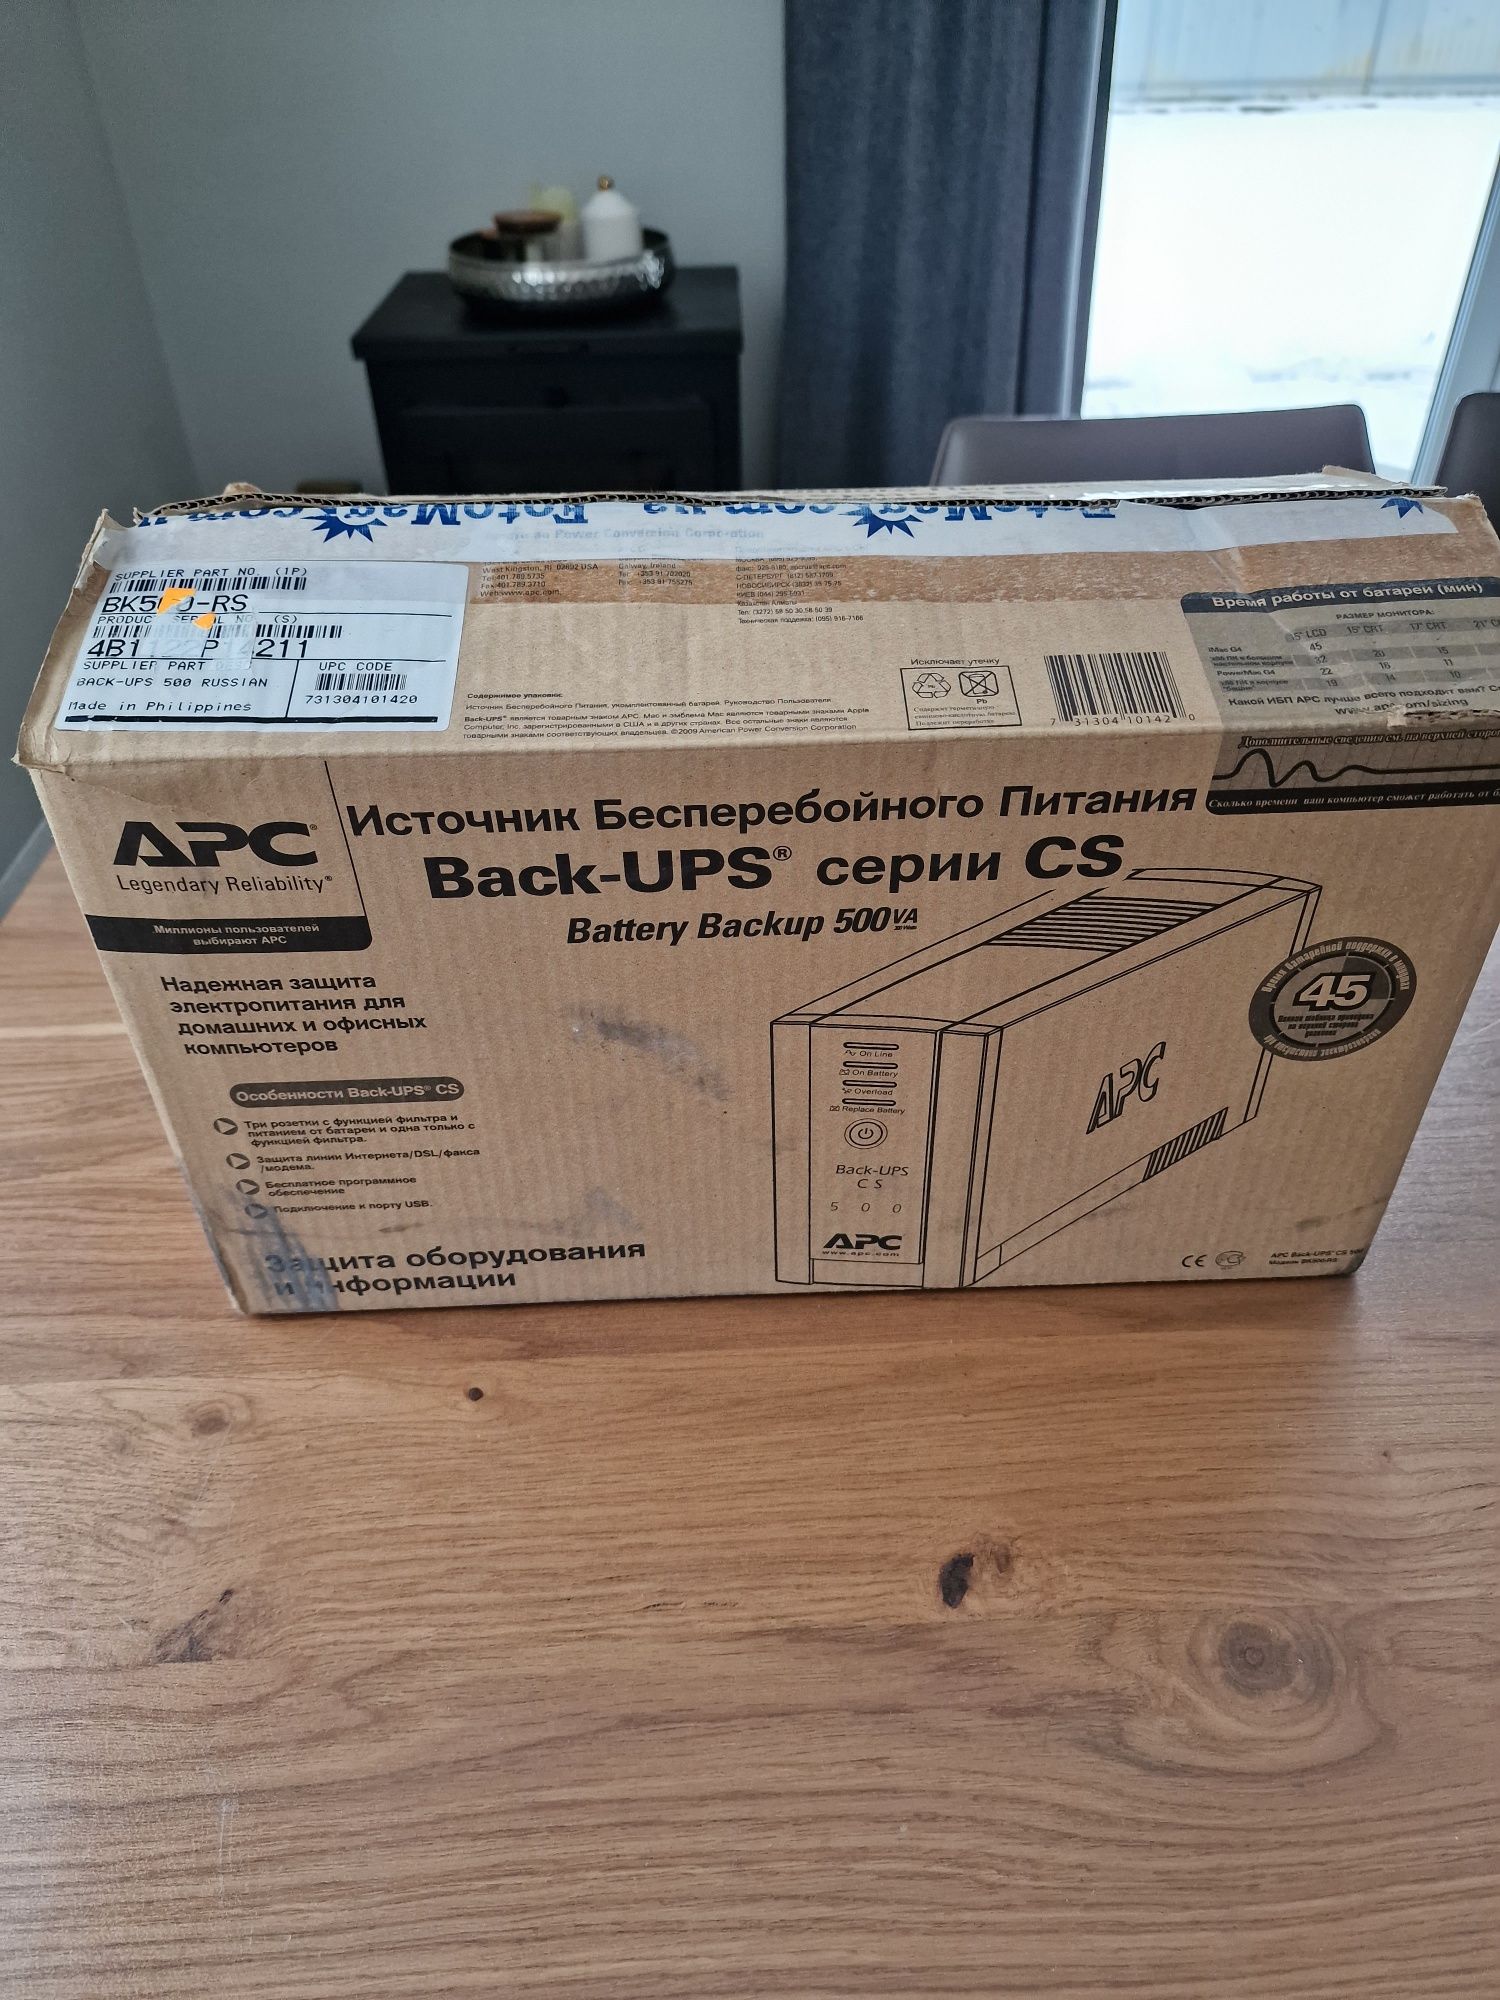 Источники бесперебойного питания Back-UPS CS 500 APC
Back-UPS CS 500 A